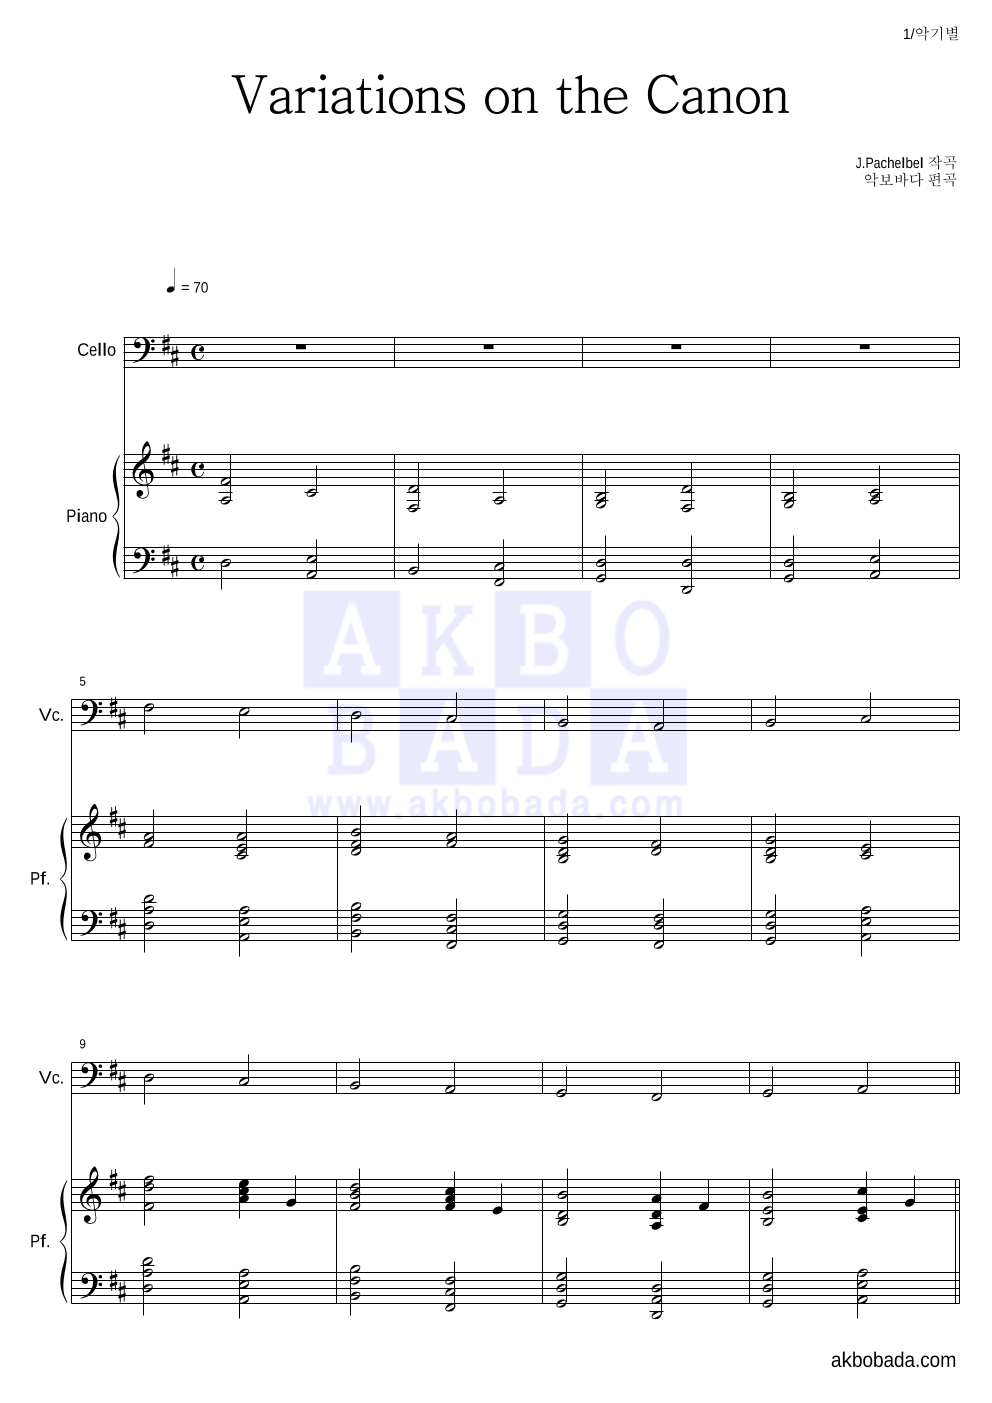 파헬벨 - Variations on the Canon 첼로&피아노 악보 